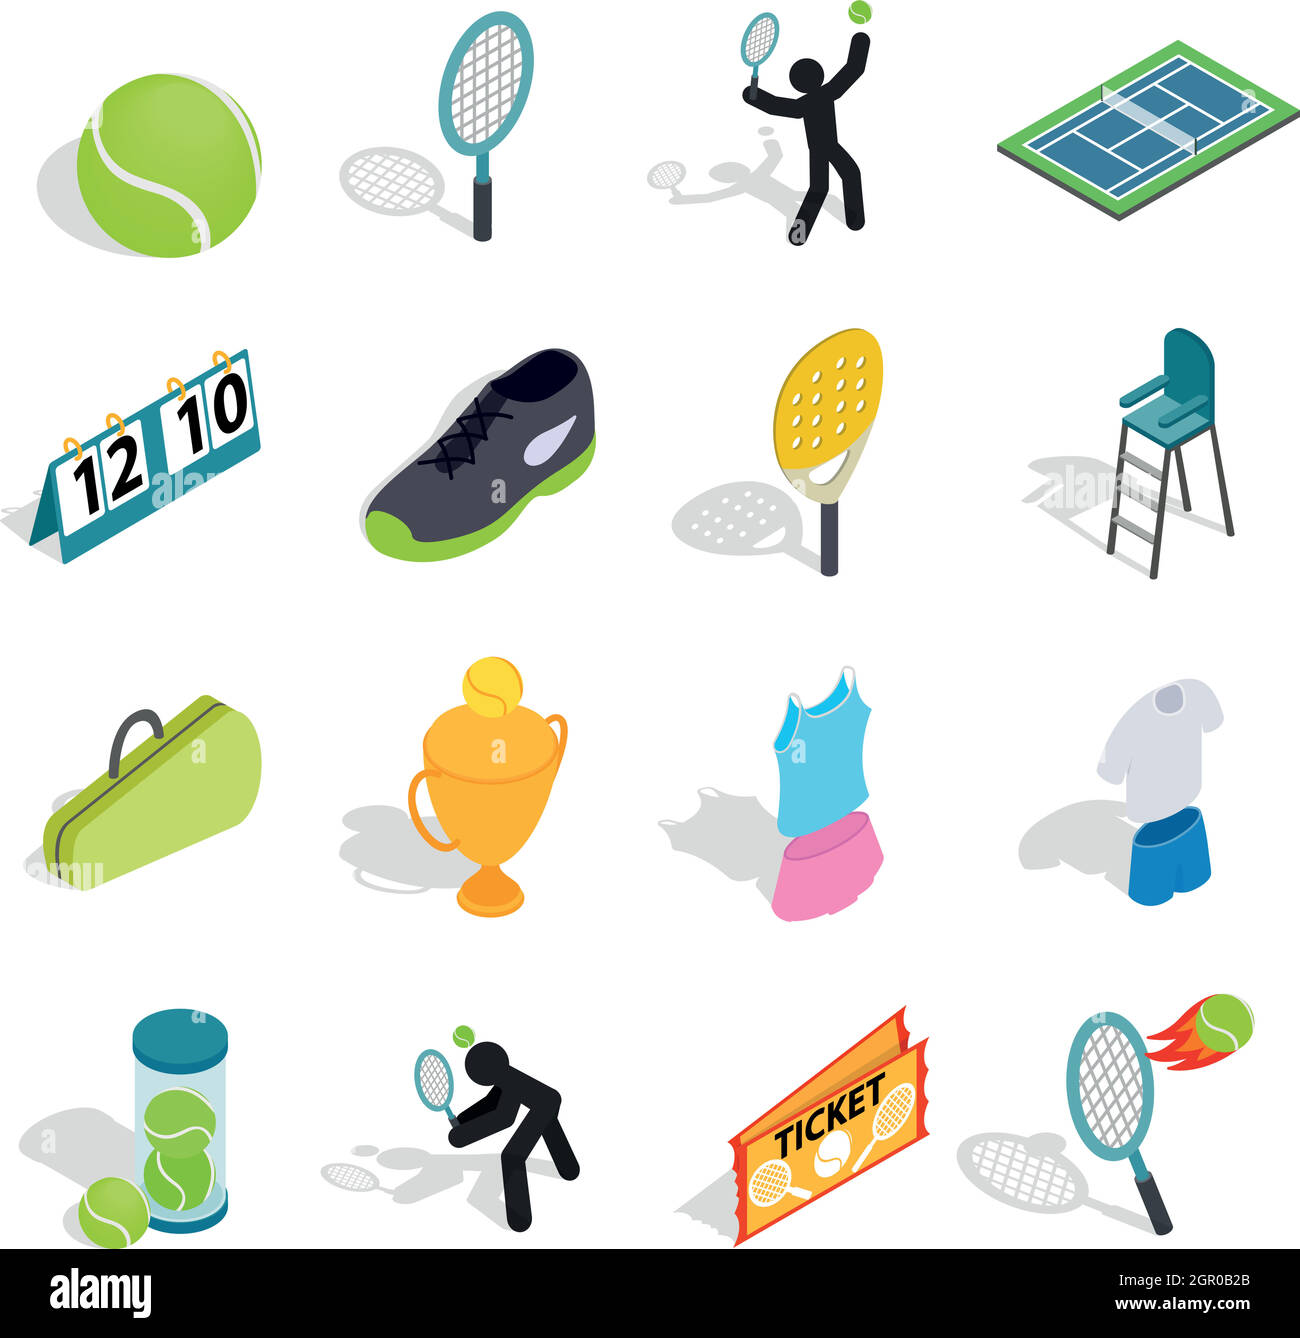 Tennis-Ikonen, die inmitten einer isometrischen 3d Stil Stock Vektor